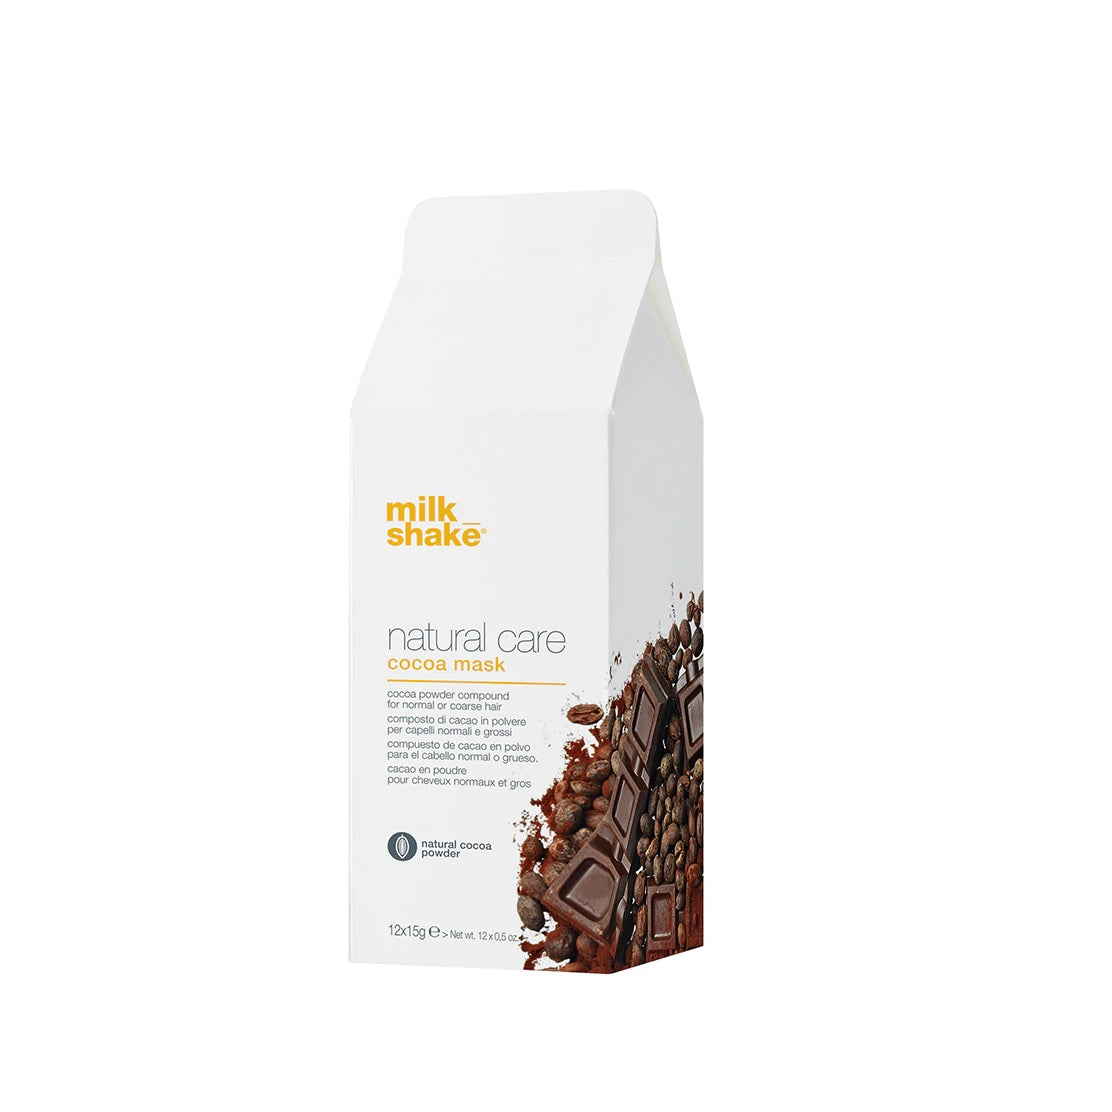 Milk_Shake Natural Care Cocoa Mask - Máscara/Composto de Cacau em Pó para Cabelos Normais e Grossos - Mykanto